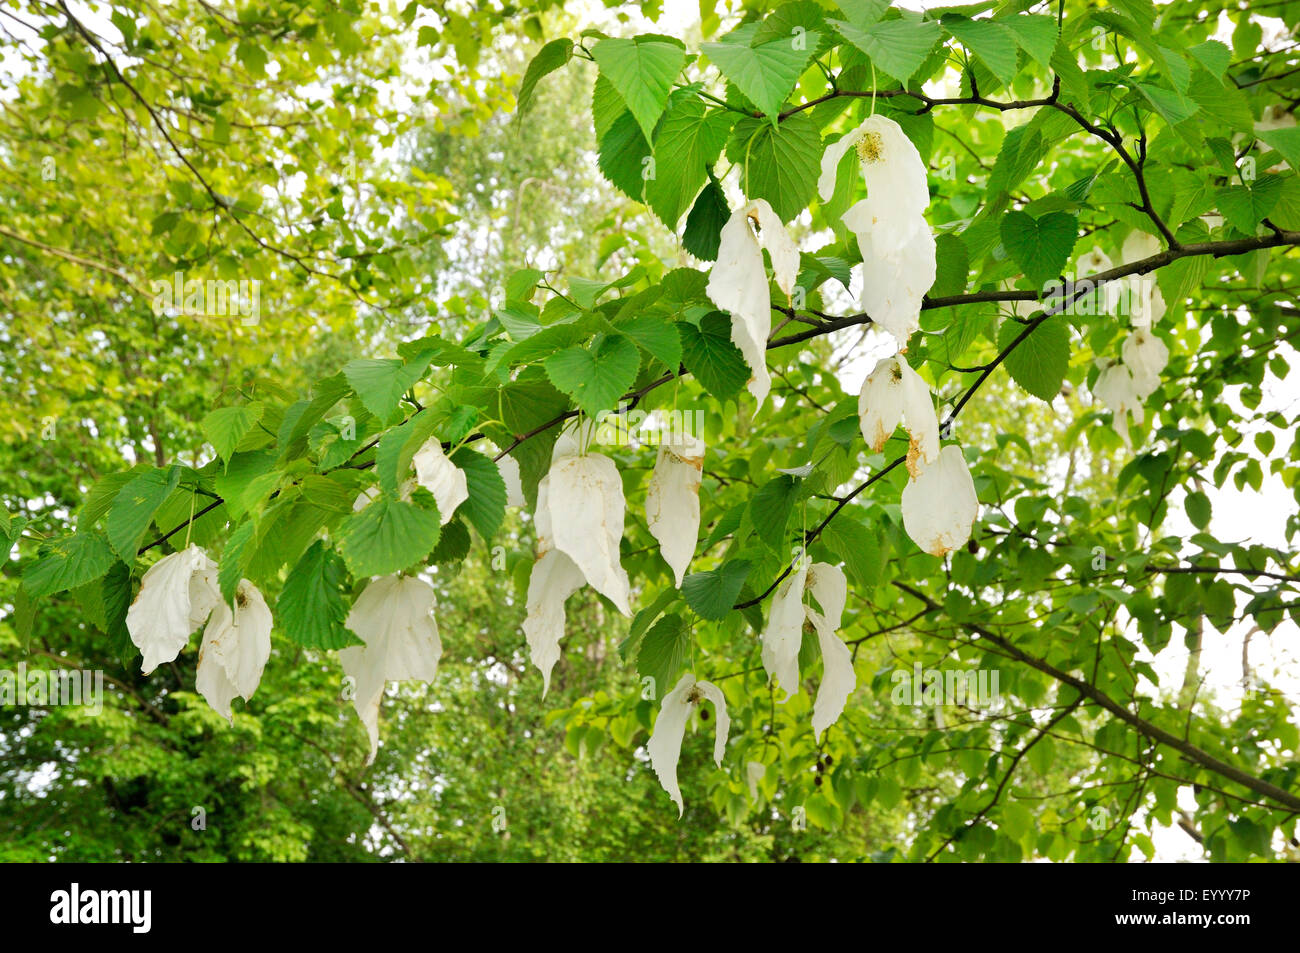 pocket-handkerchief tree (Davidia involucrata), blooming Stock Photo